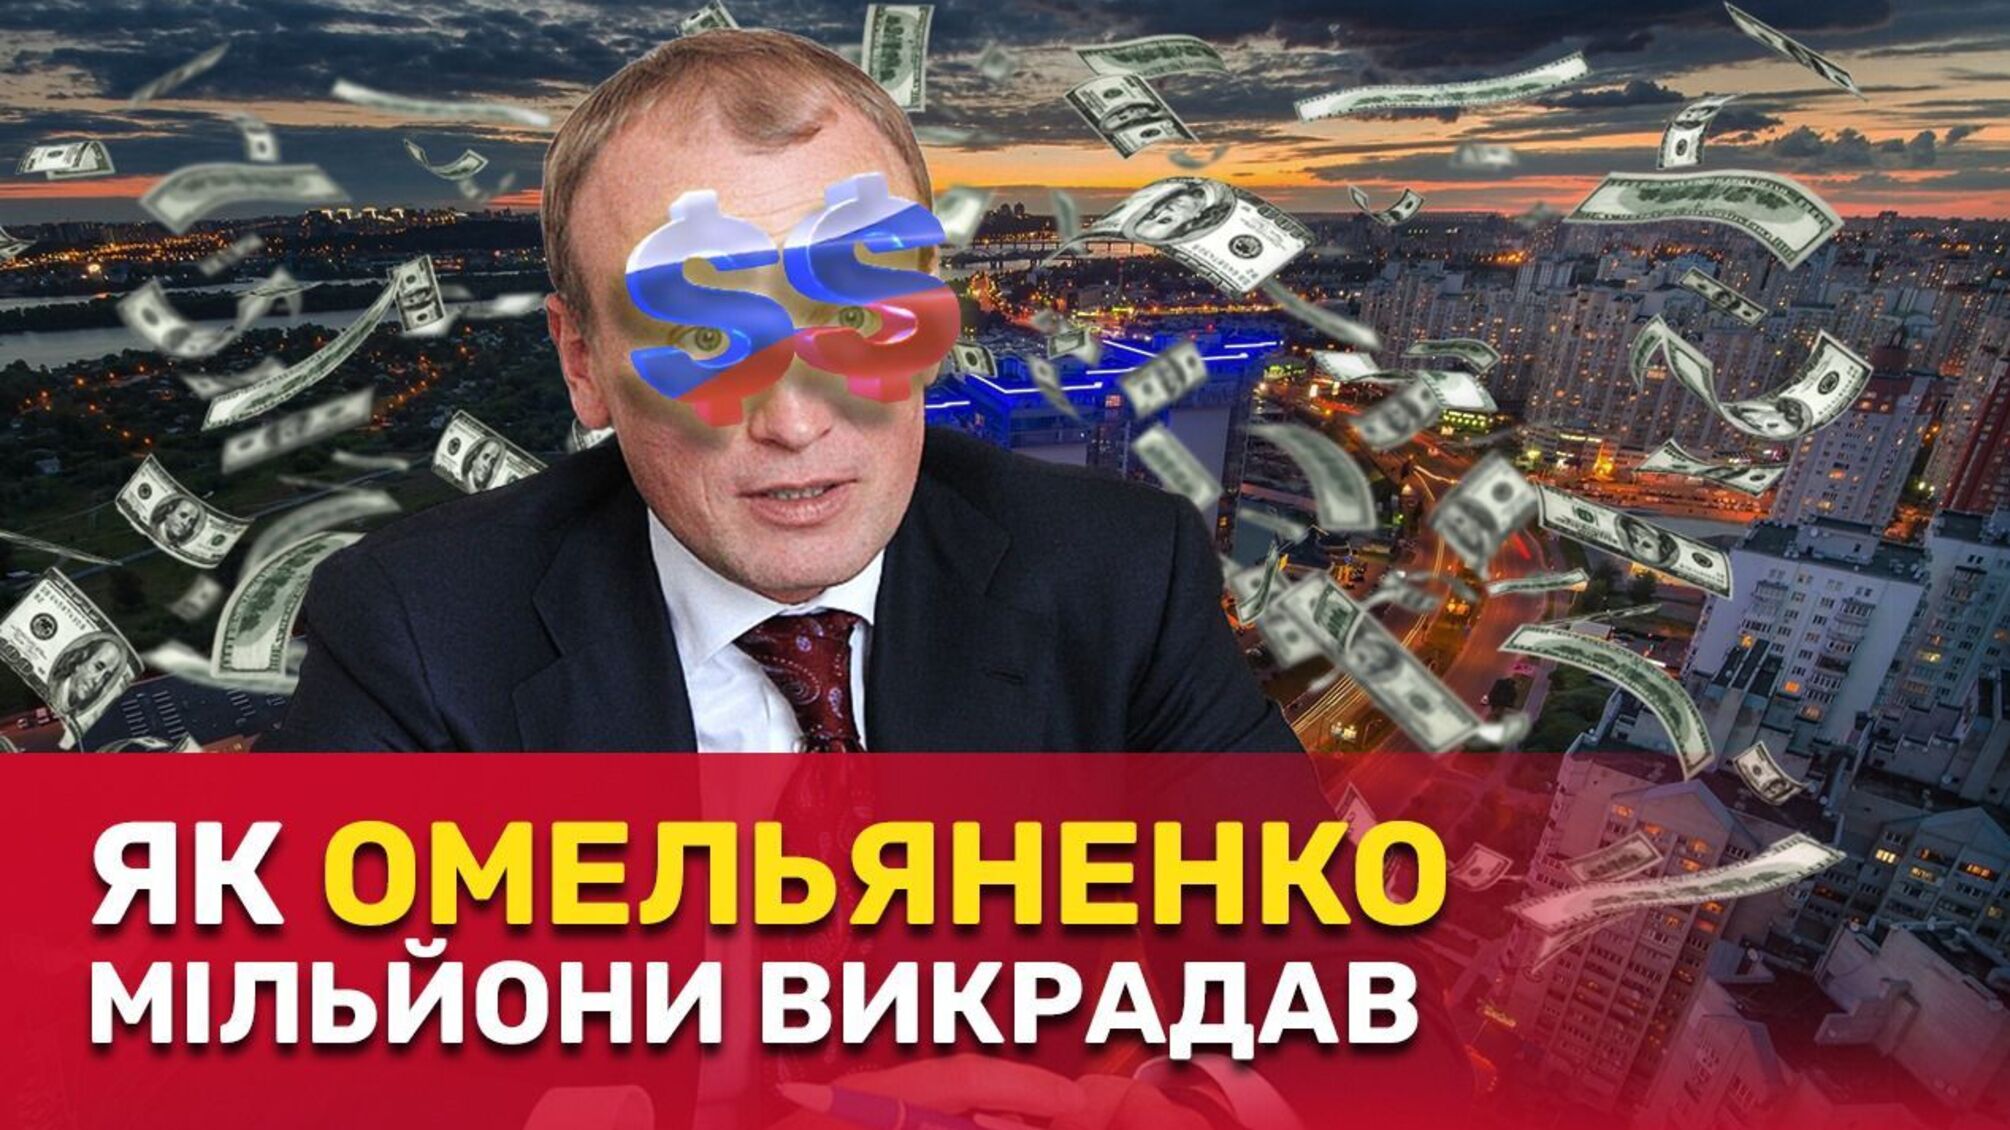 'Схема' на 160 млн: фірма проросійського банкіра Омельяненка претендує на землі на столичній Оболоні